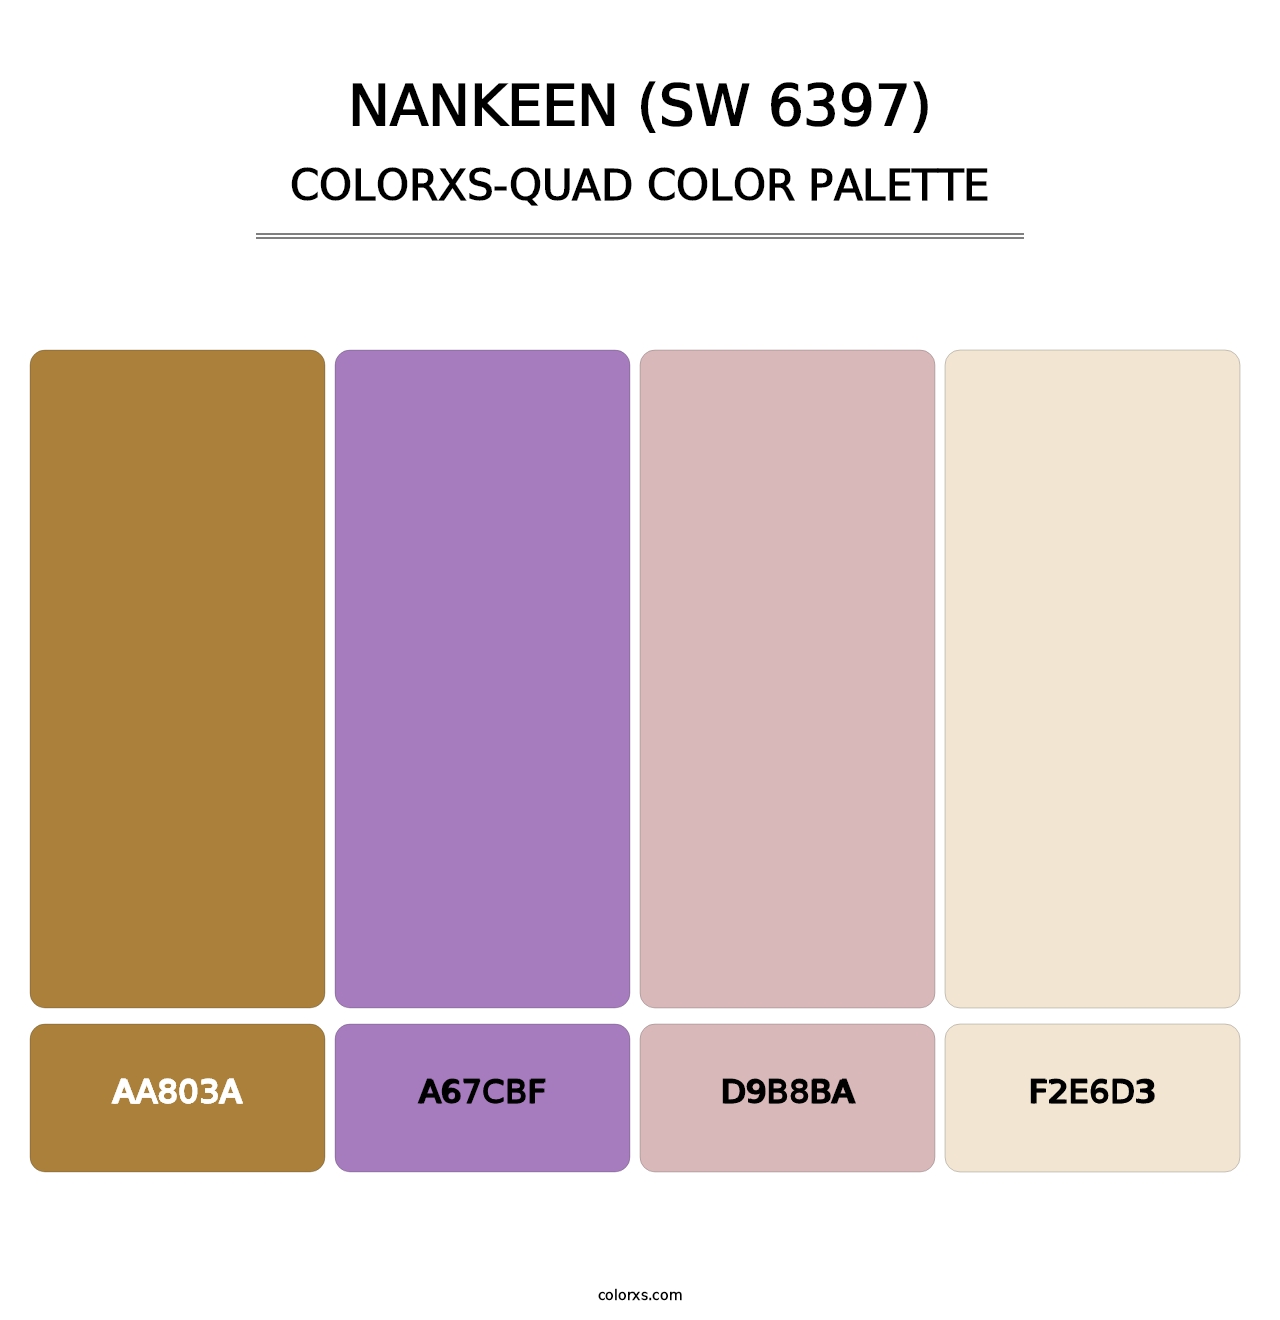 Nankeen (SW 6397) - Colorxs Quad Palette